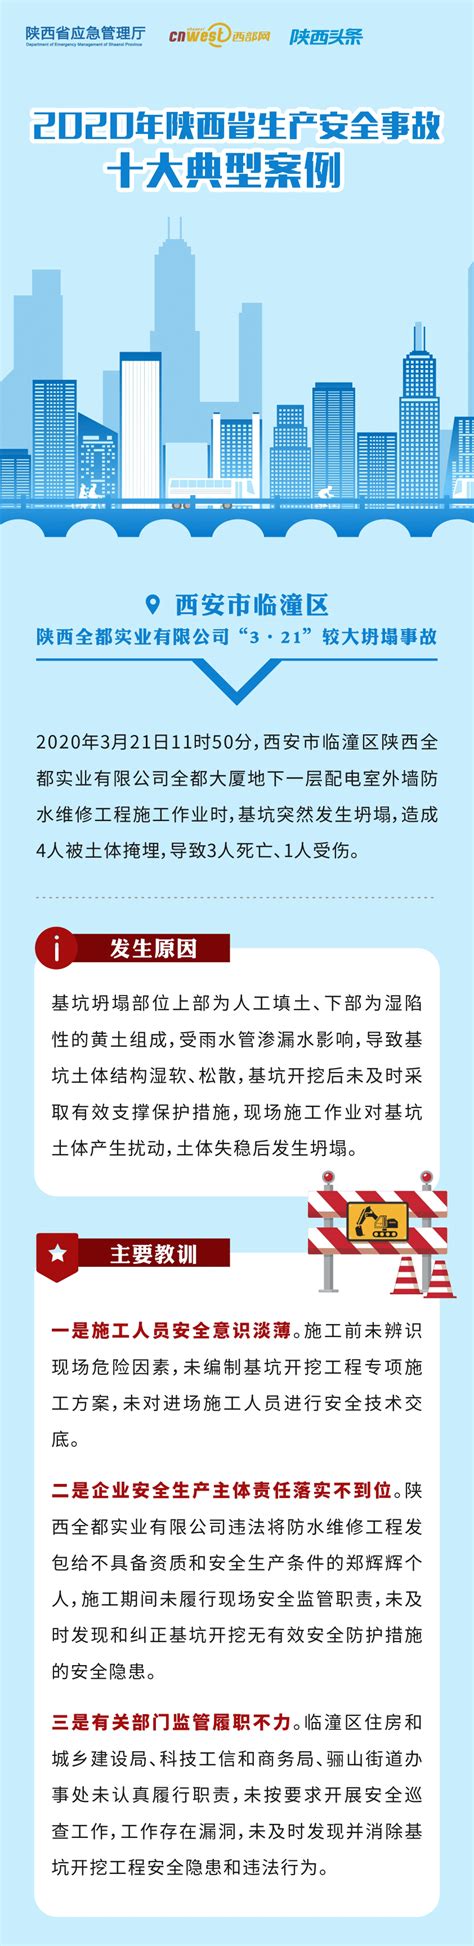 图解丨2020年陕西省生产安全事故十大典型案例-安康市应急管理局